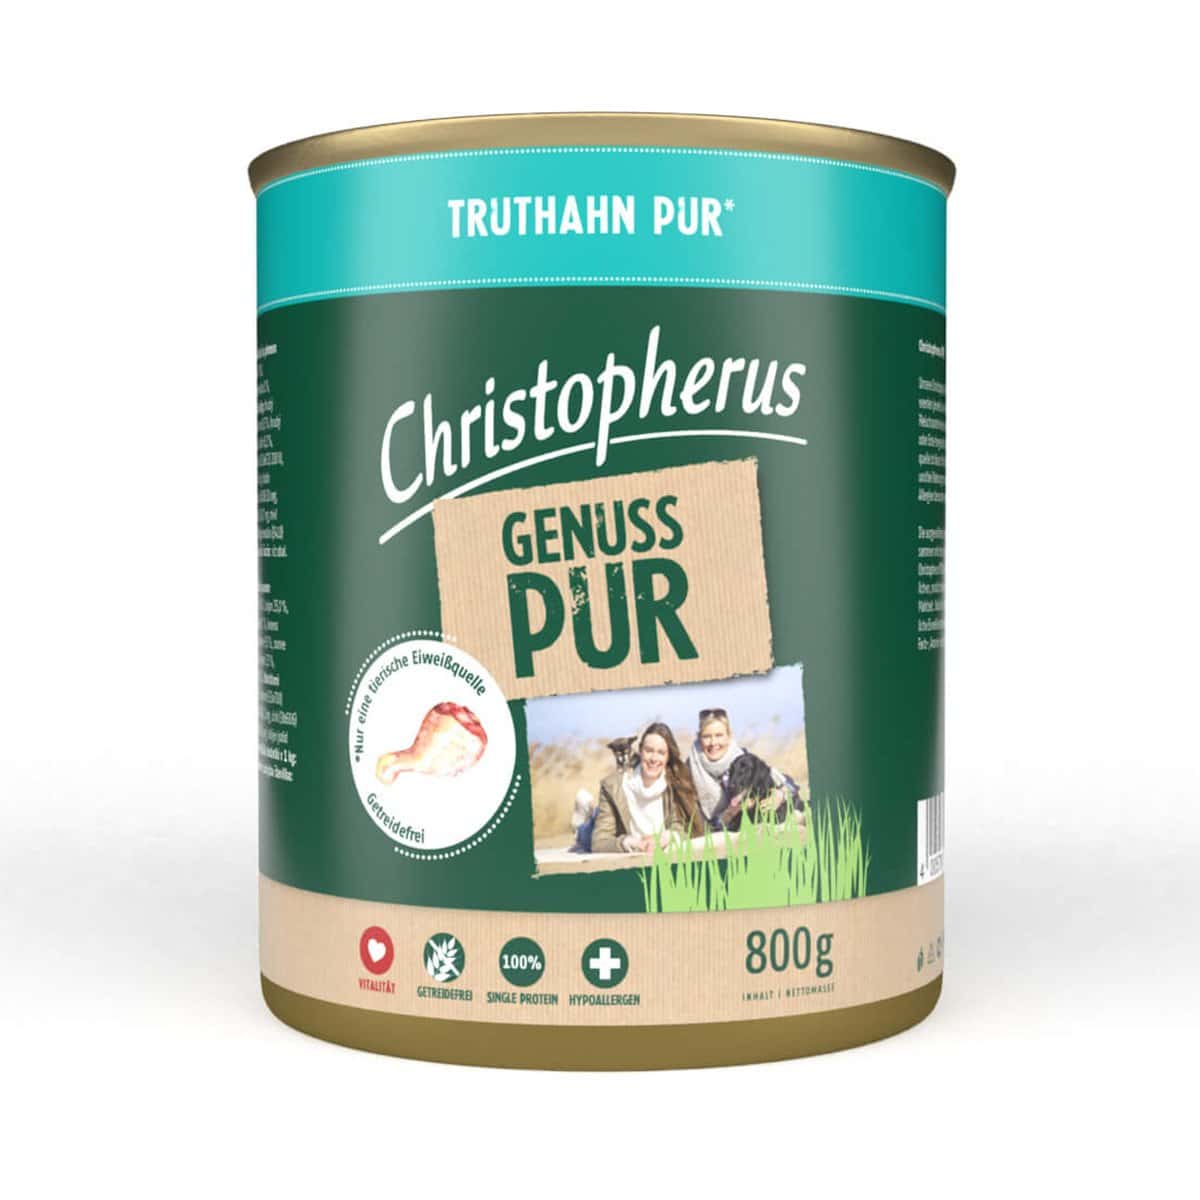 Christopherus Pur – Truthahn 12x800g